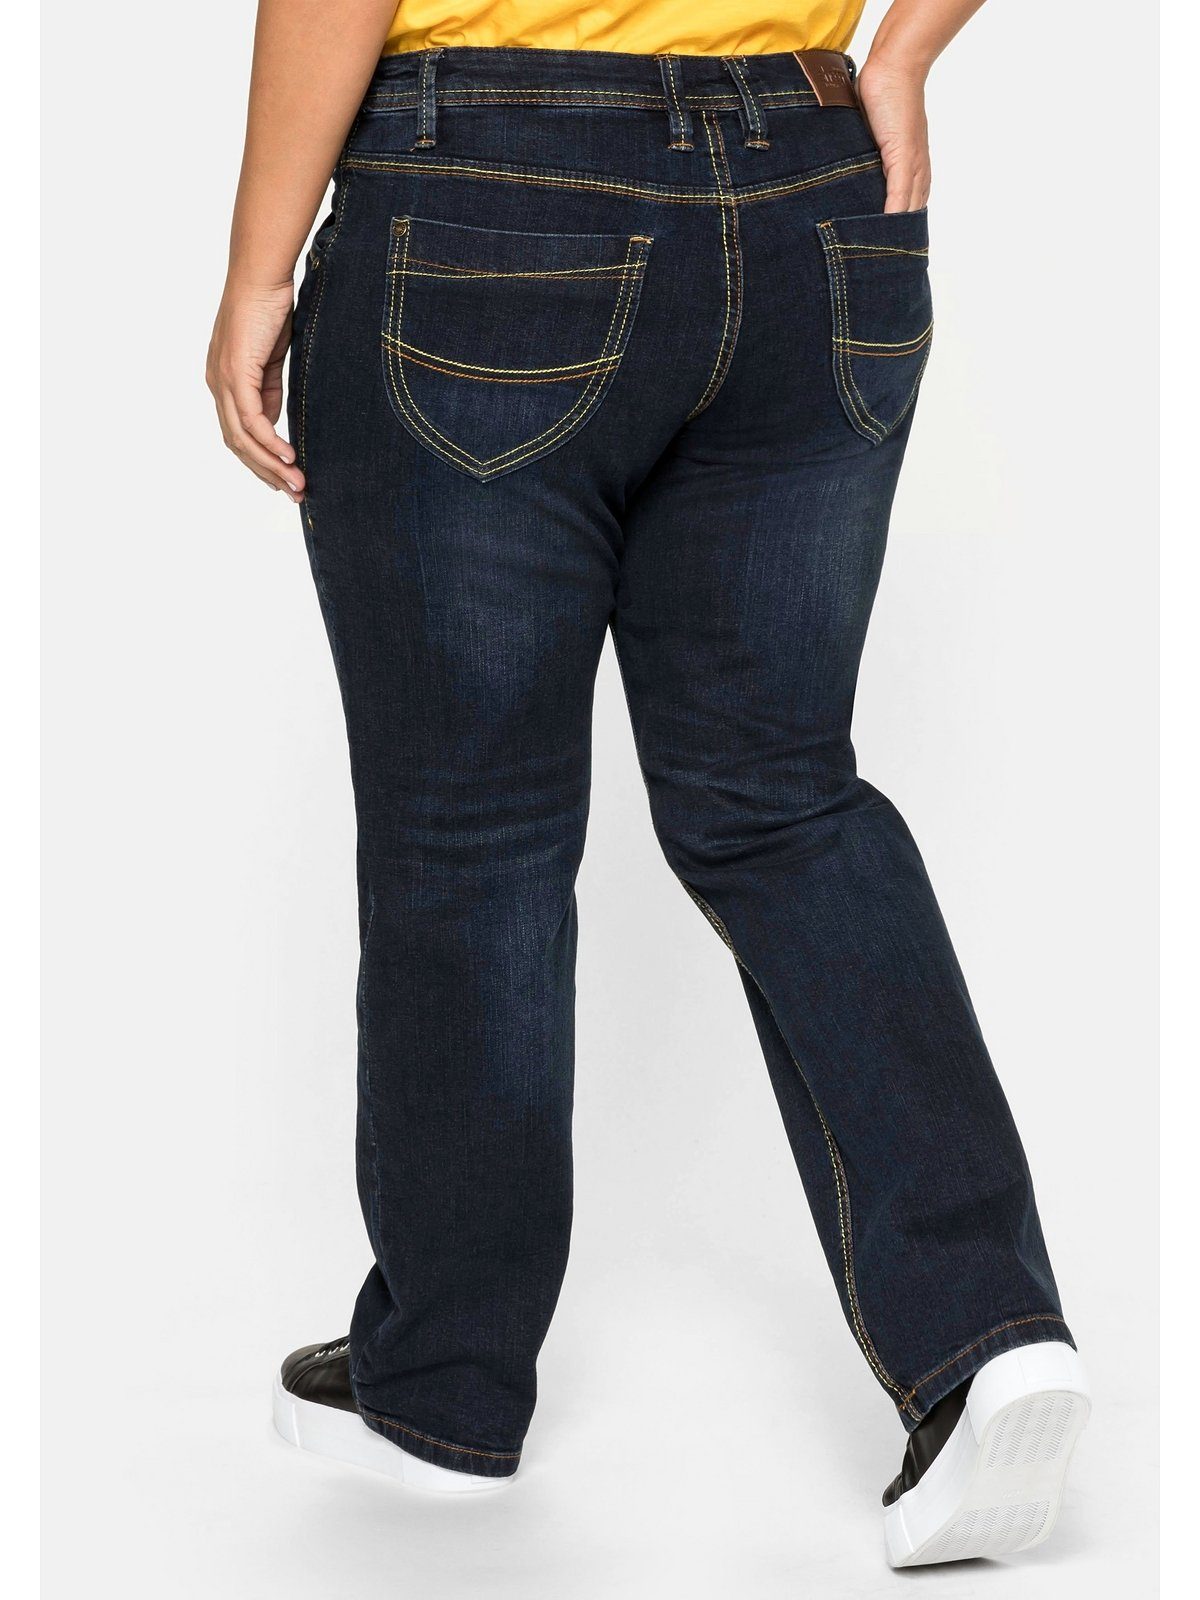 Informationen zu Rabatten im Versandhandel Sheego Stretch-Jeans Große Größen Beinform, individuelle gerader Used-Effekte mit